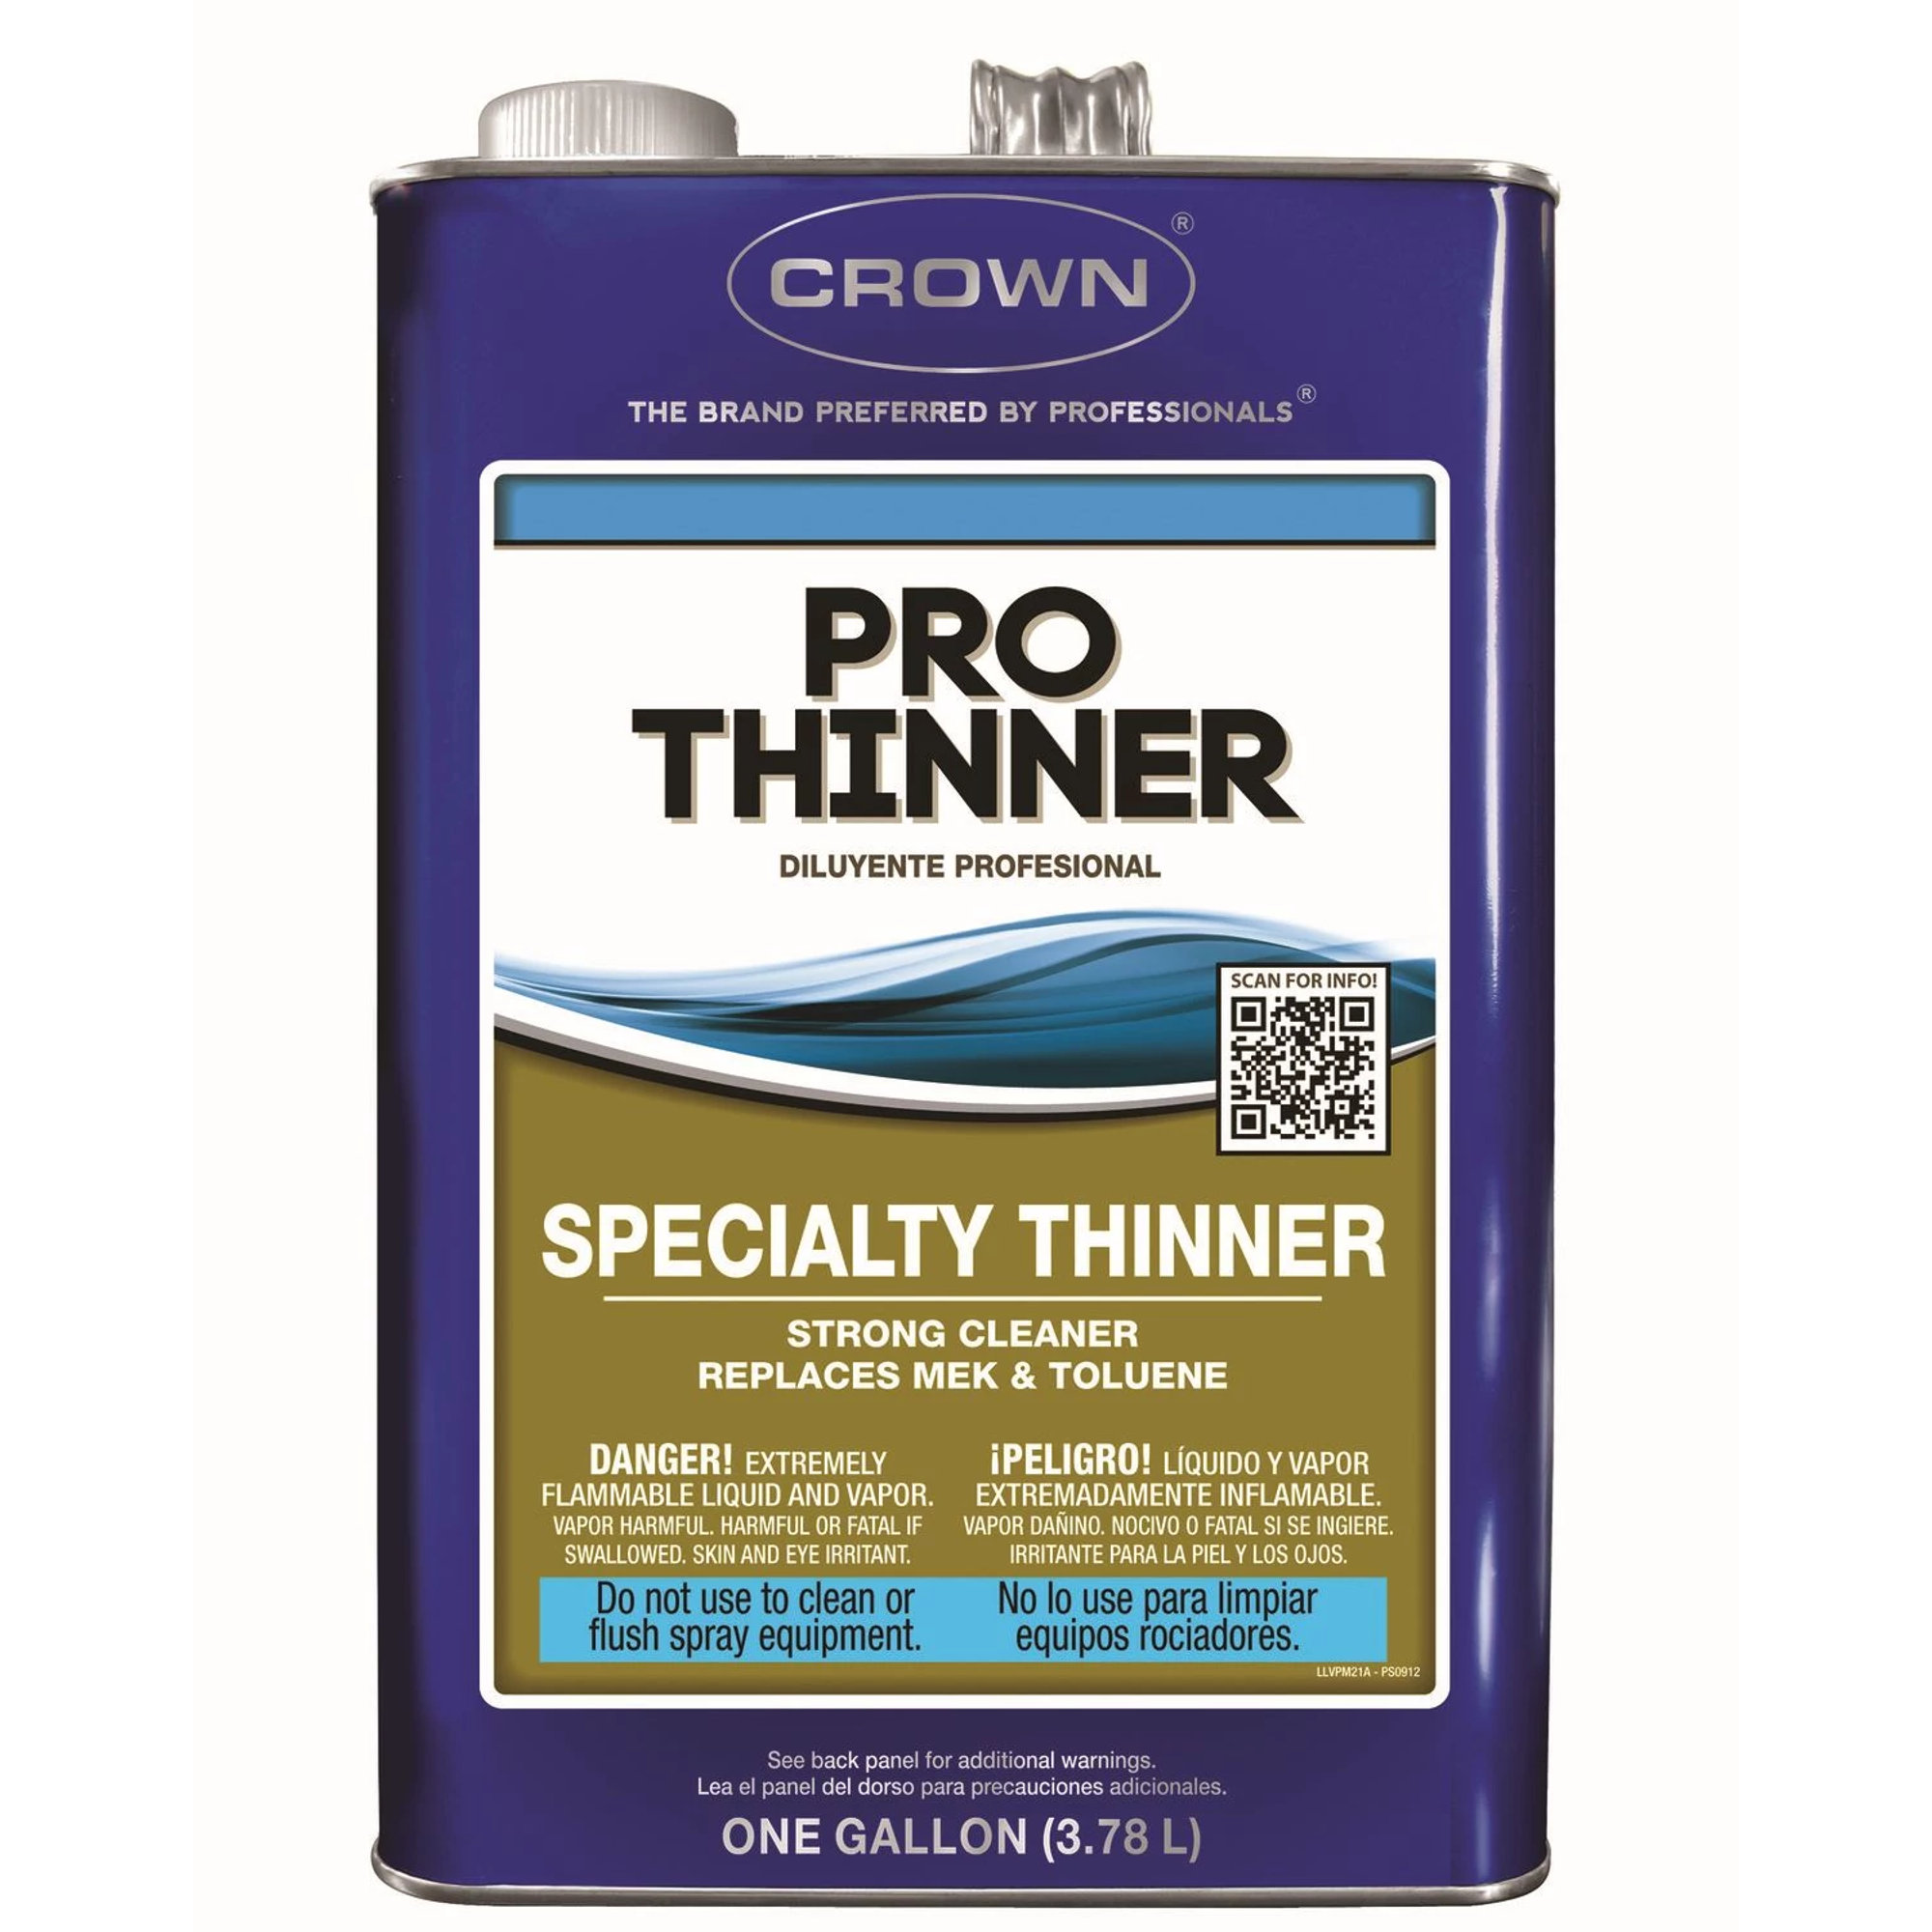 Crown VOC Compliant Pro Thinner